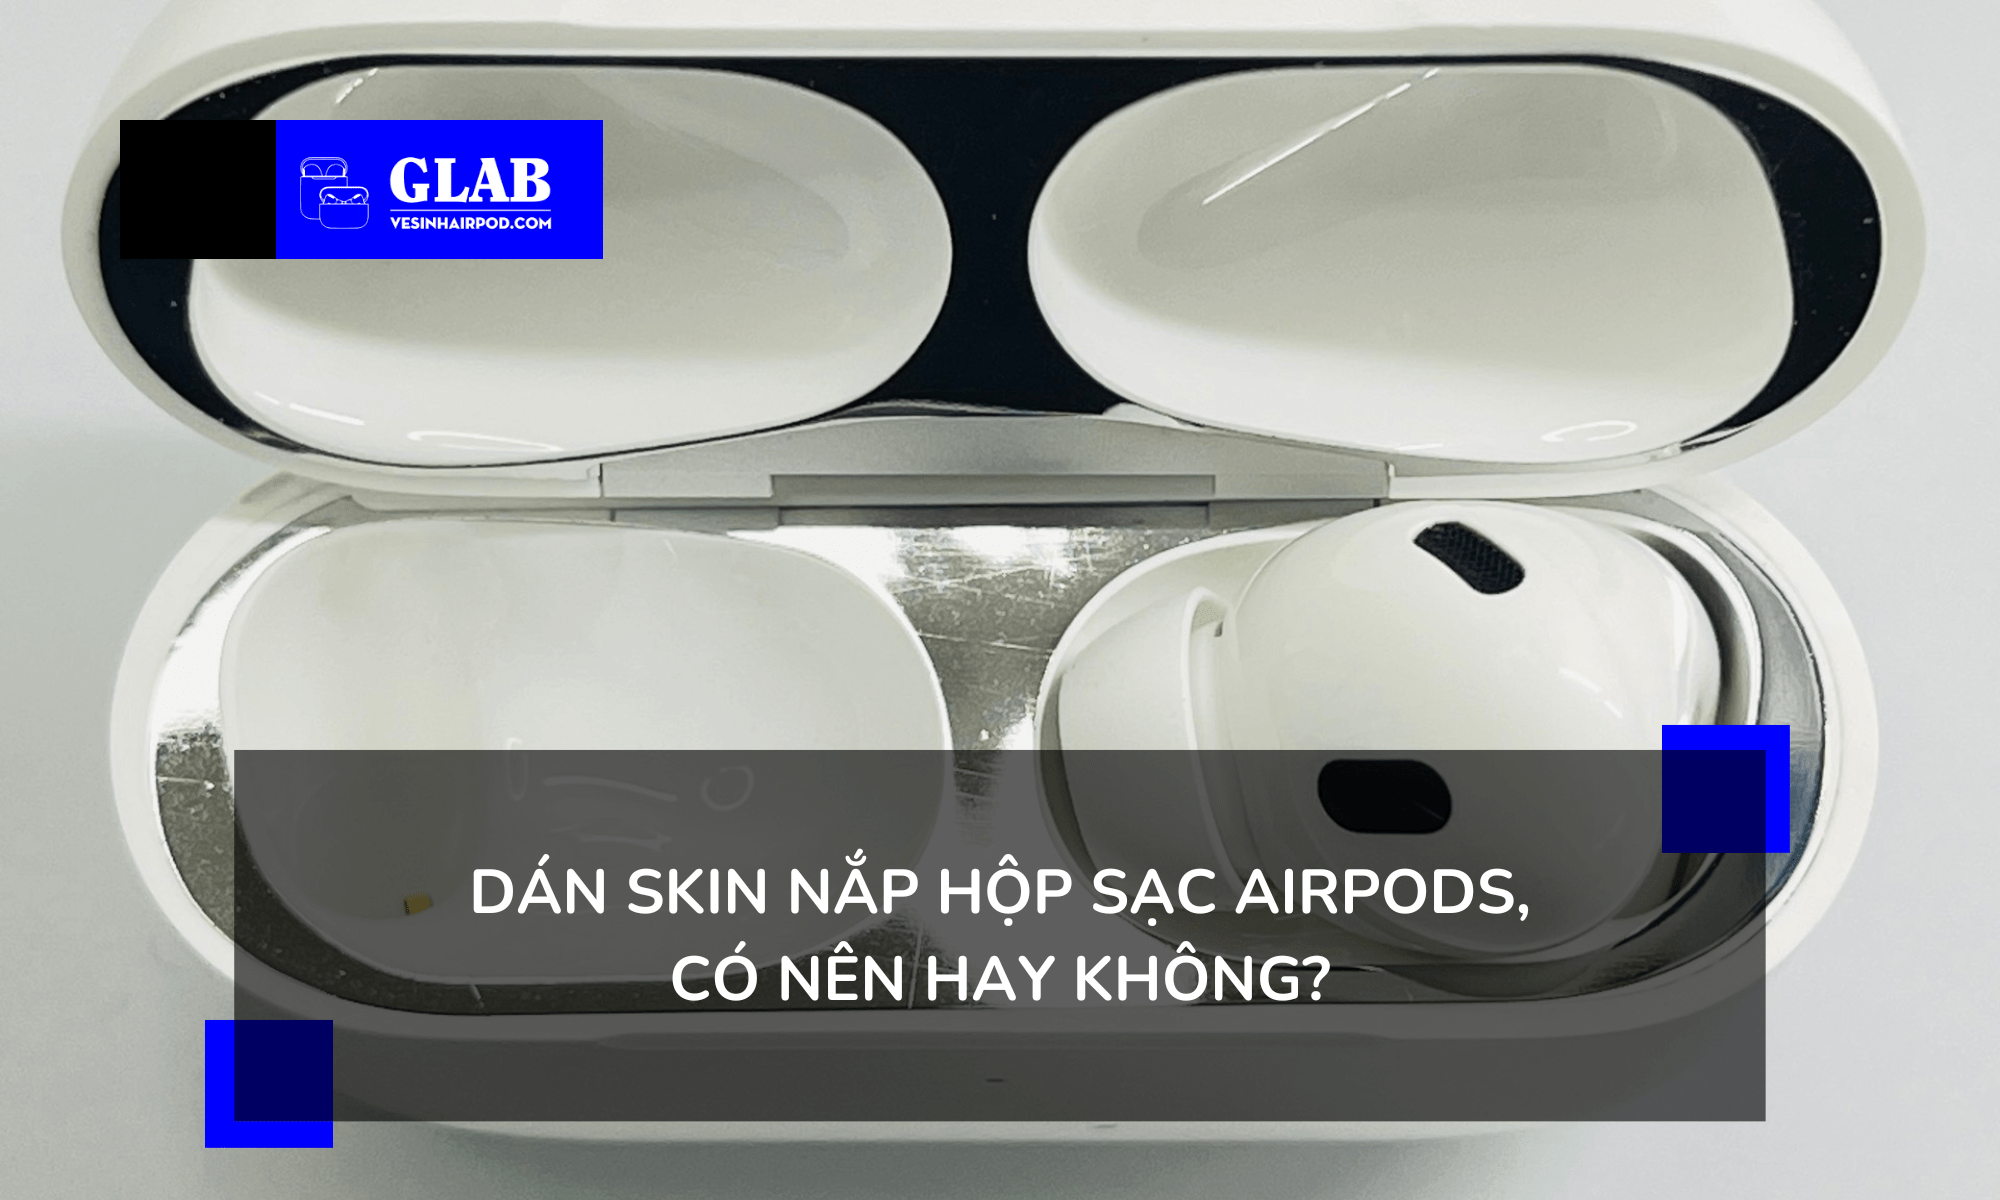 dan-skin-nap-hop-sac-airpods